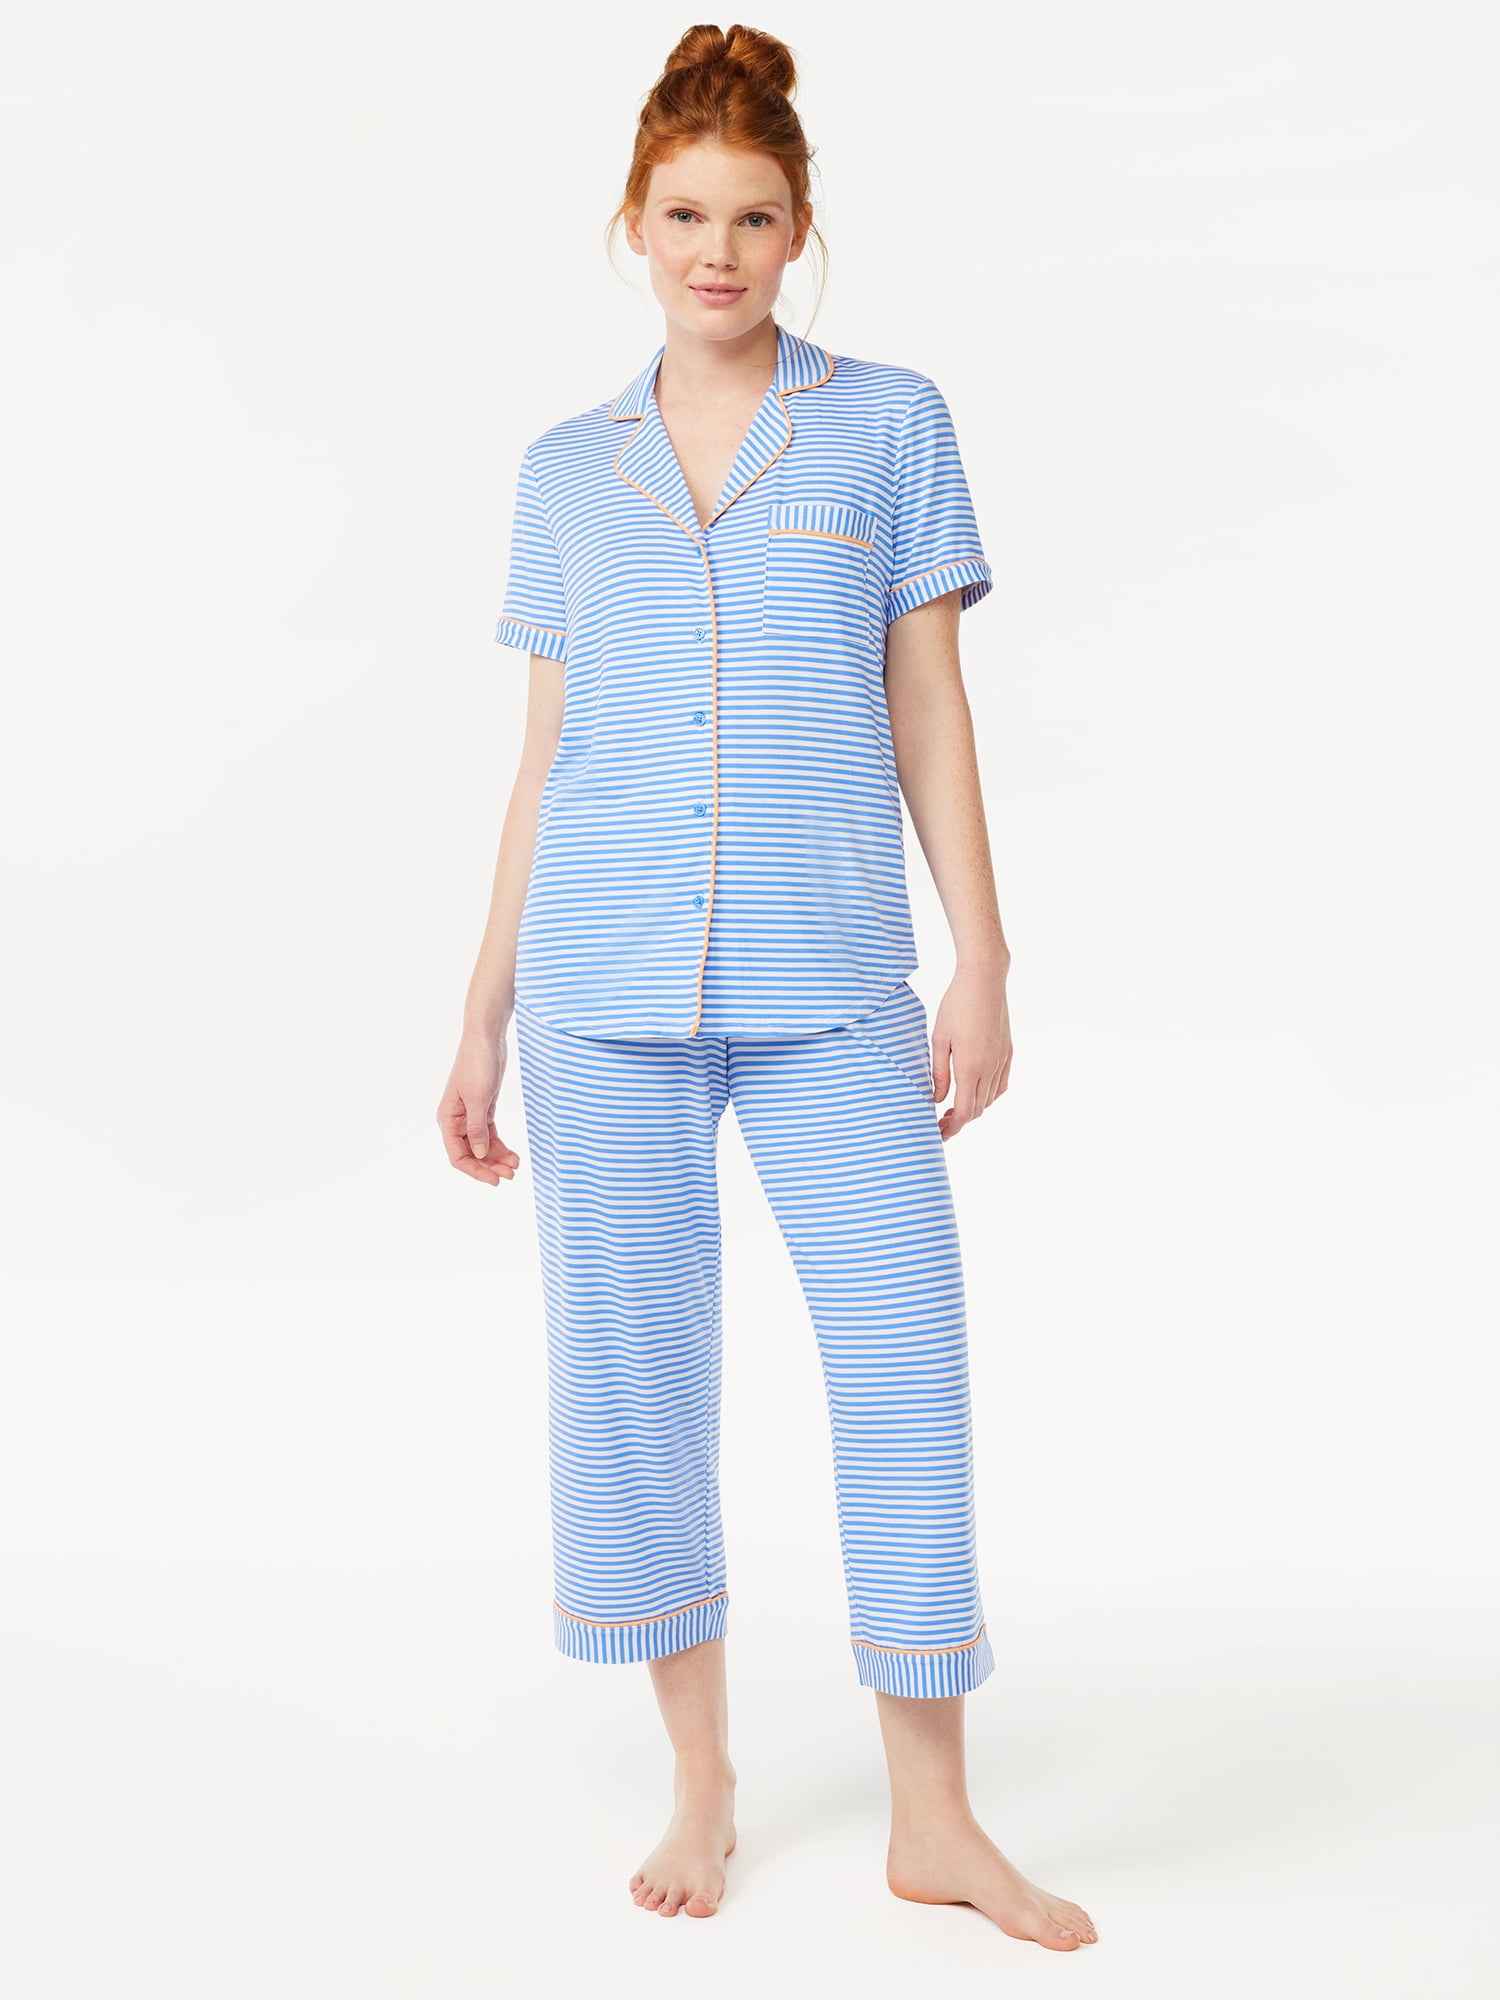 Joyspun Women's Knit Notch Collar Top and Capris Sleep Set, 2-Piece, Sizes S to 5X